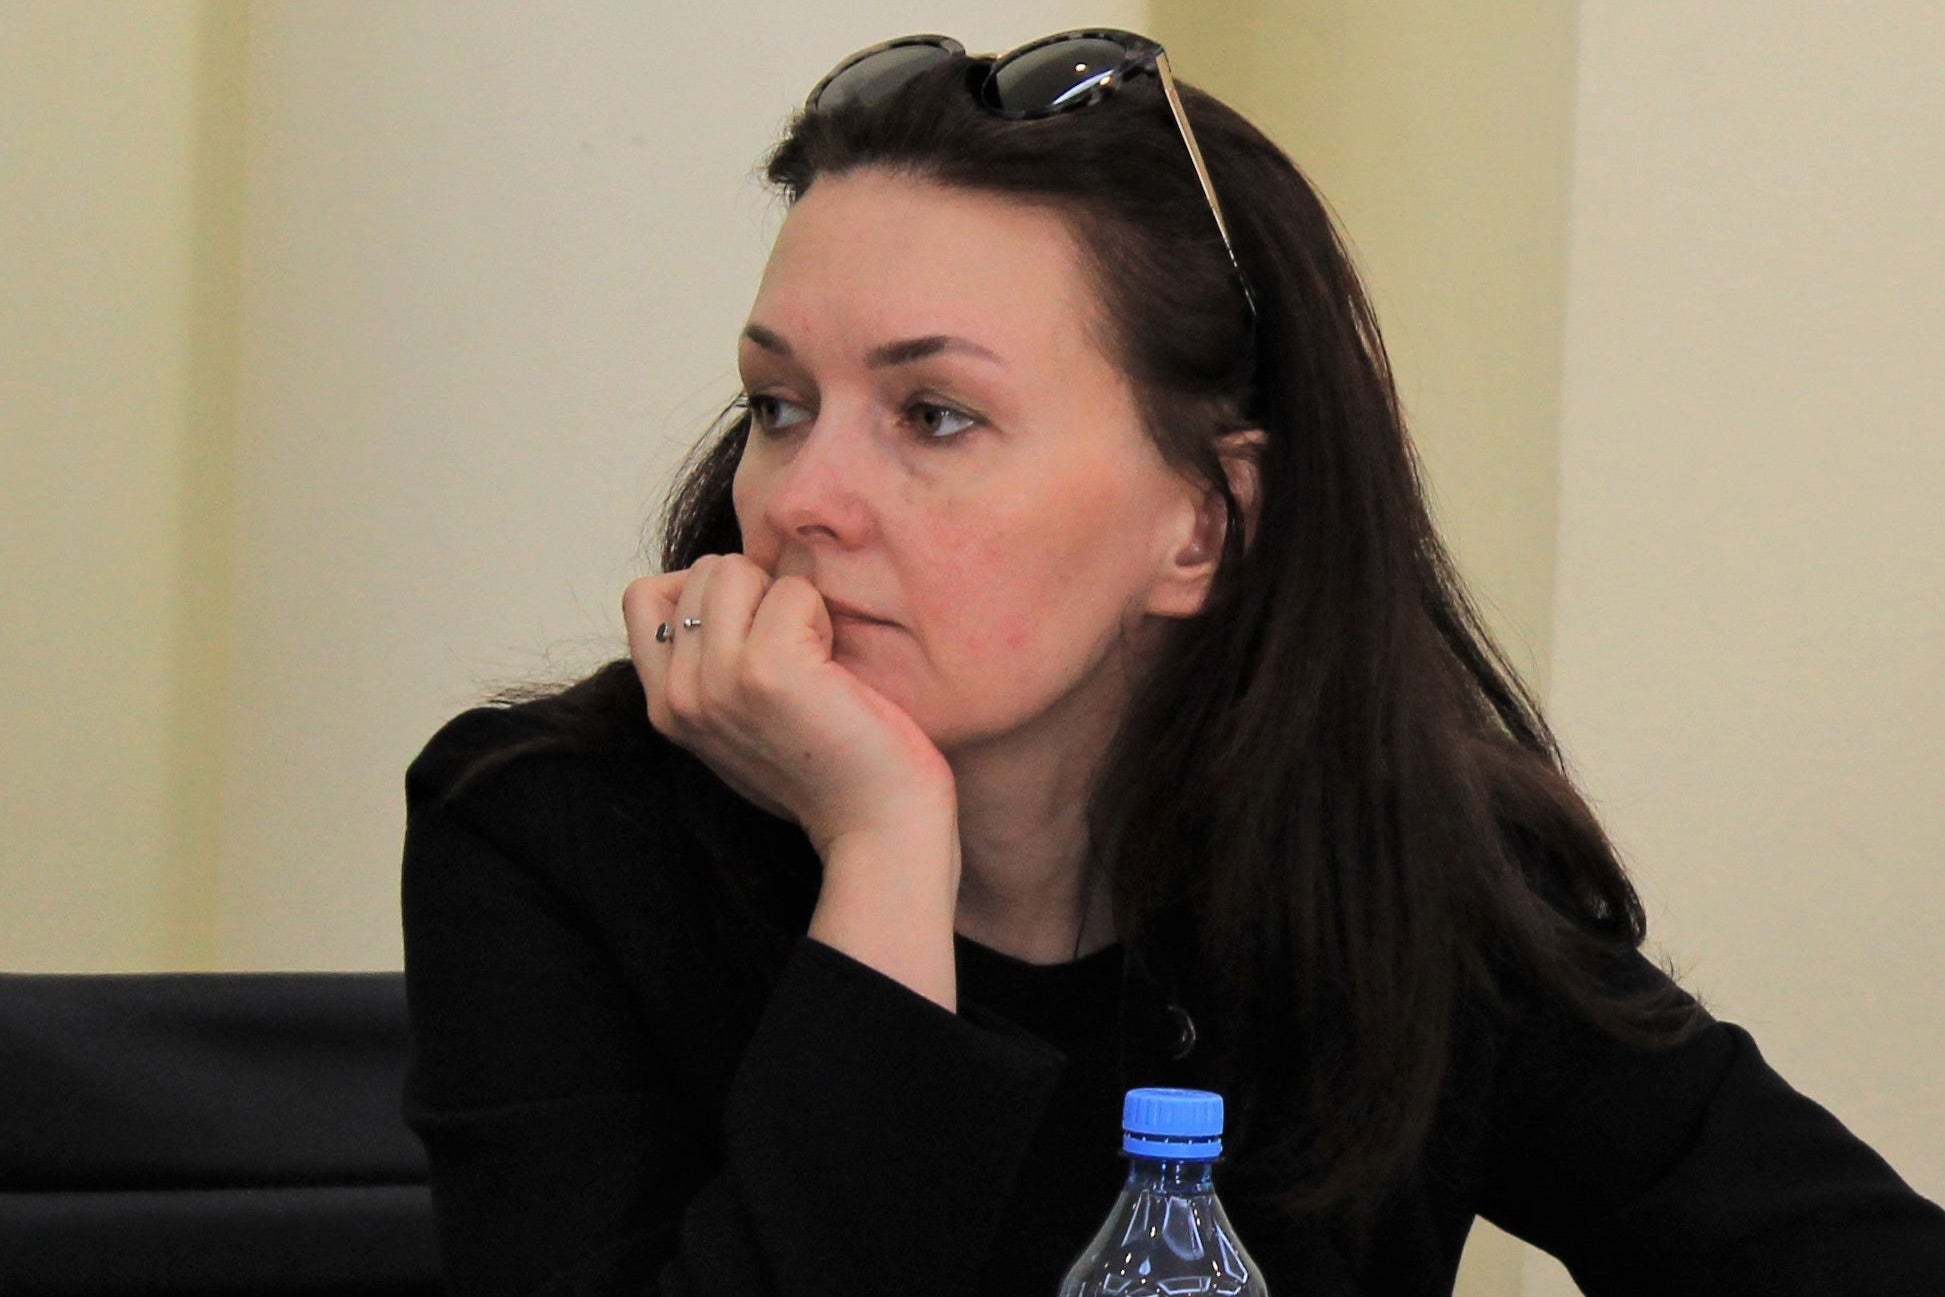 Tatiana Kouzina at a conference in 2019.